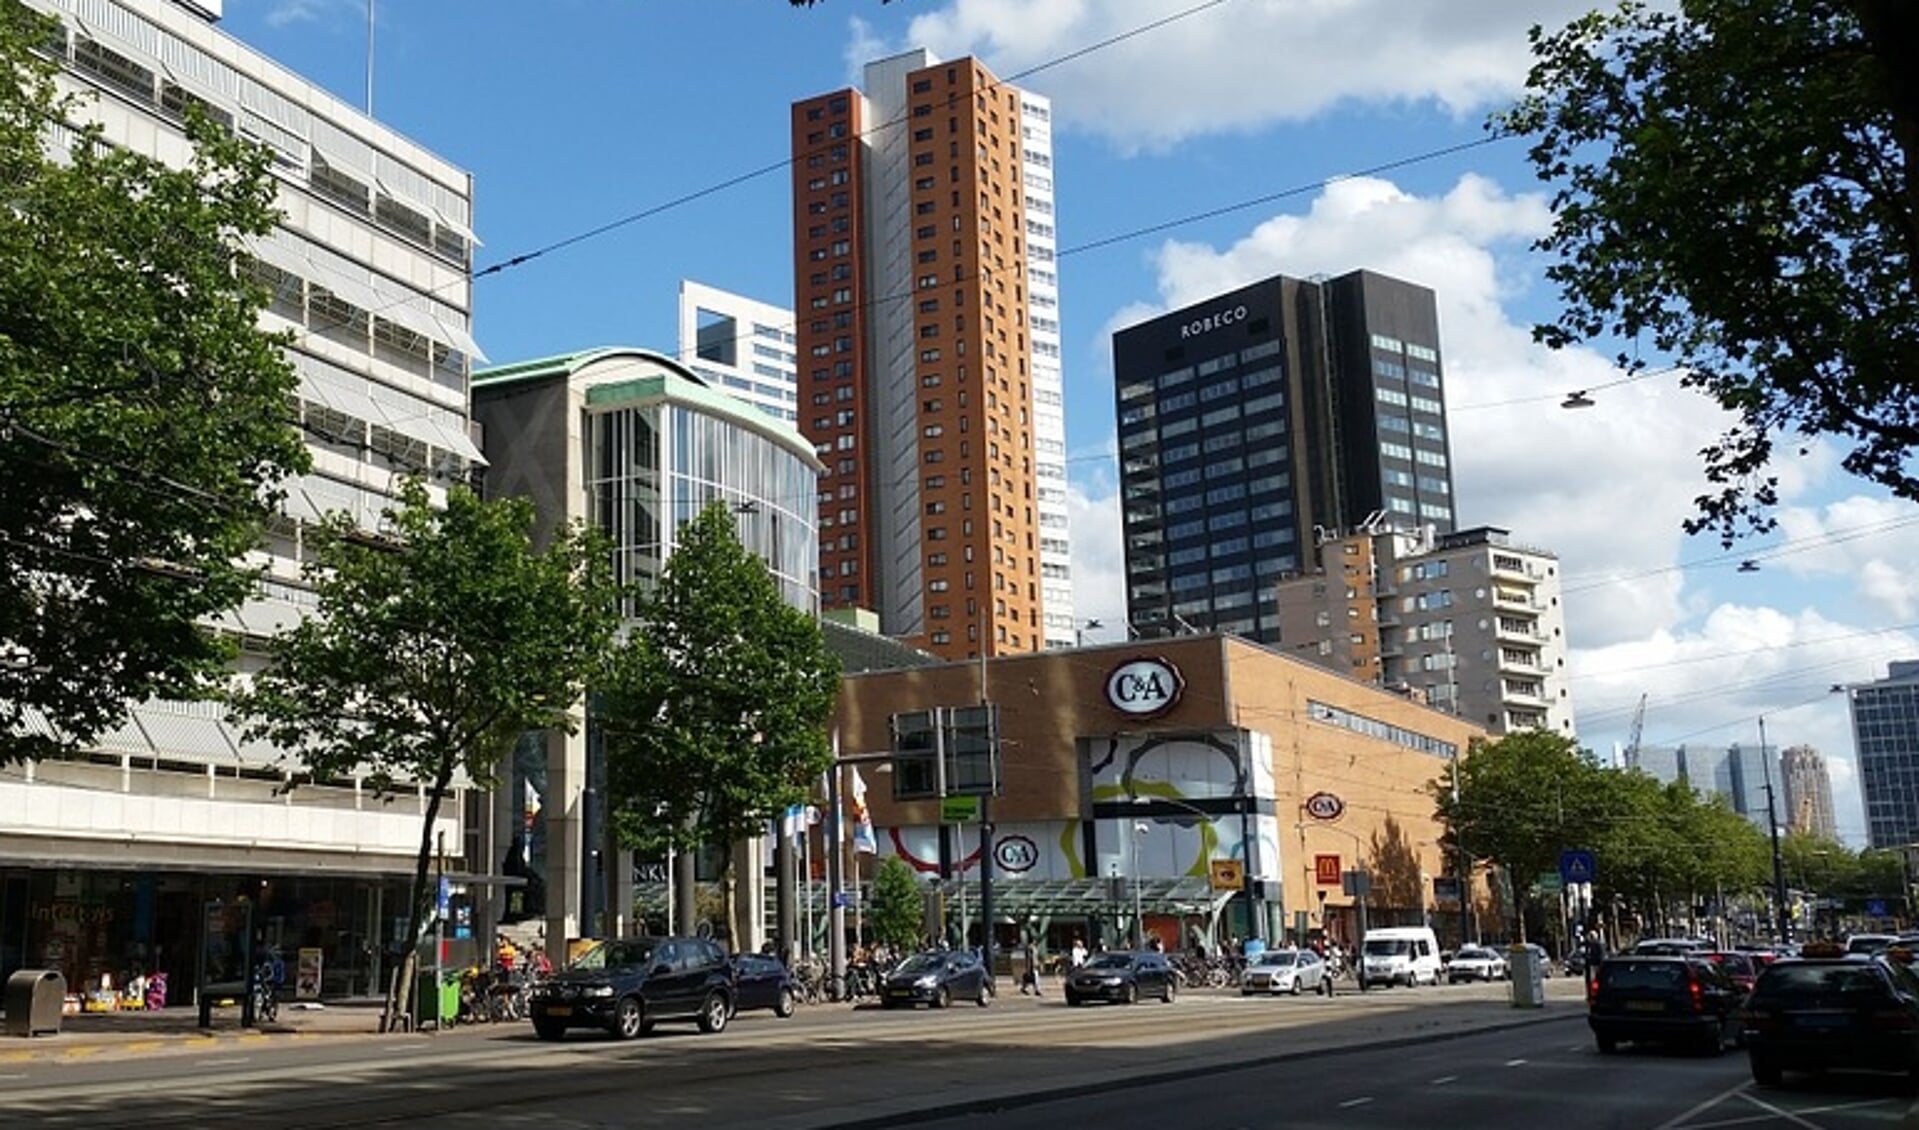 Rotterdam presteert bovenmatig goed met oog op de nadere energielabelverplichting. Foto: pixabay.com